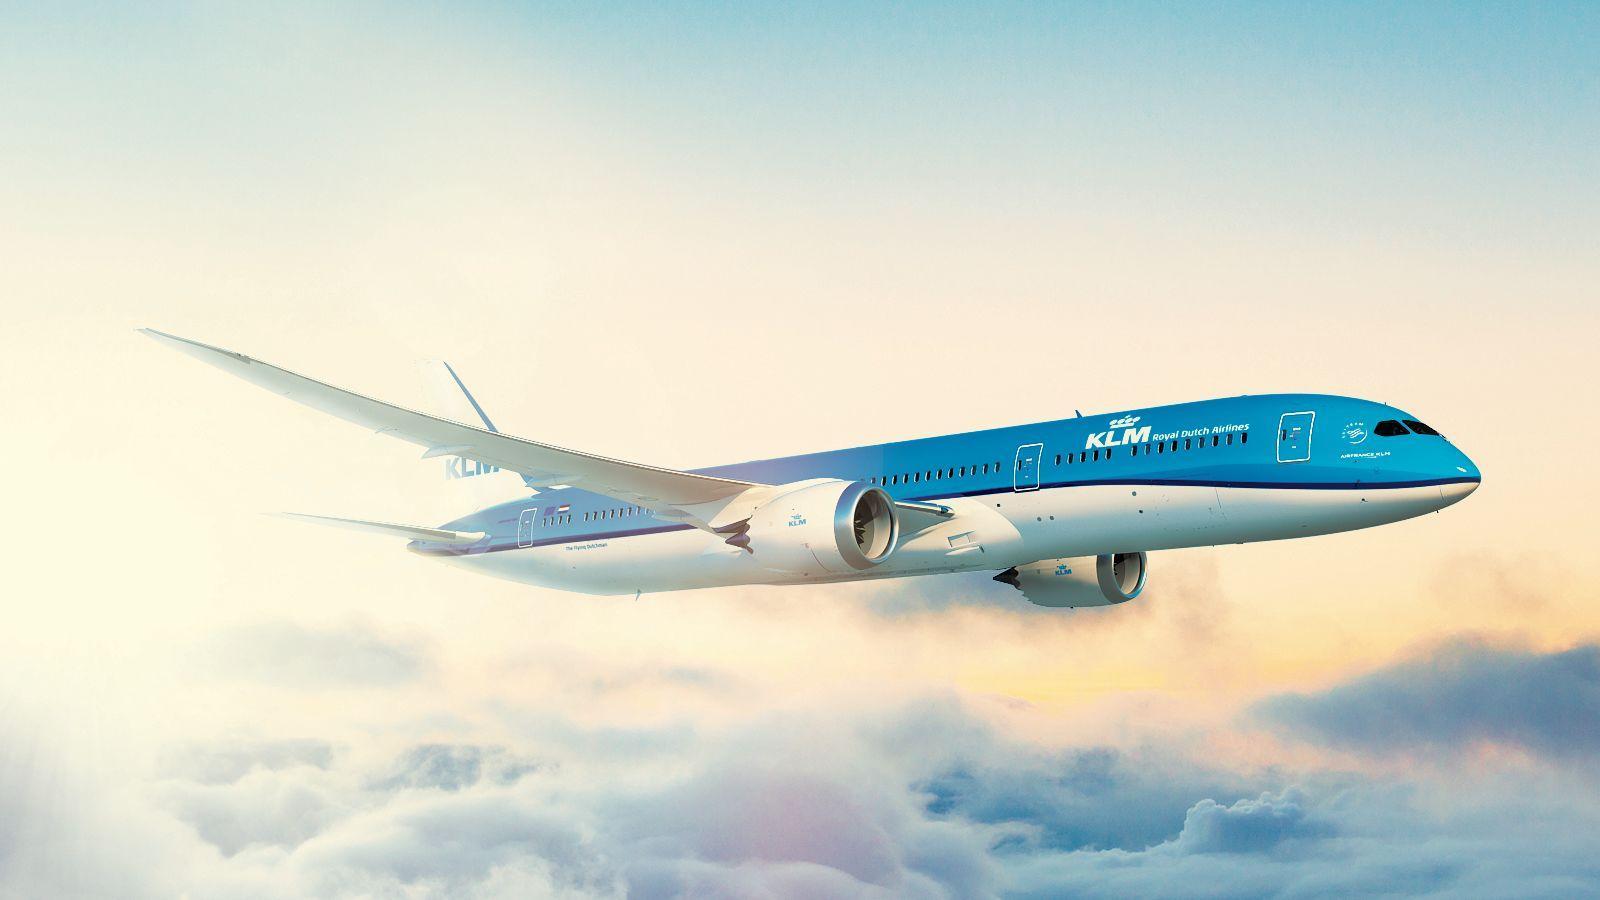 KLMオランダ航空 ビジネスクラスで最高のサービスと優雅な空の旅をお届け - JTBロイヤルロード銀座 高品質な少人数の旅・ツアー